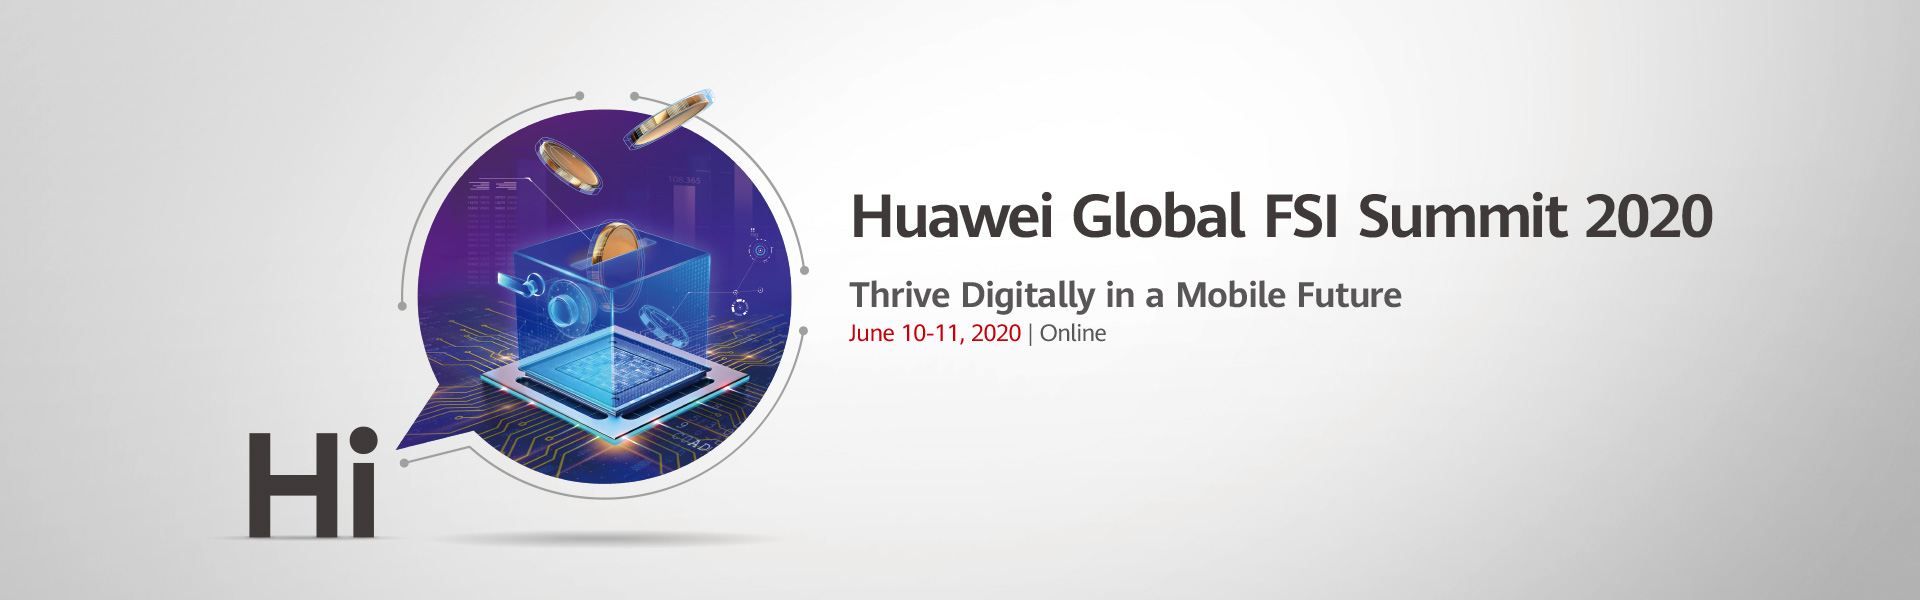 Huawei Global FSI Summit 2020